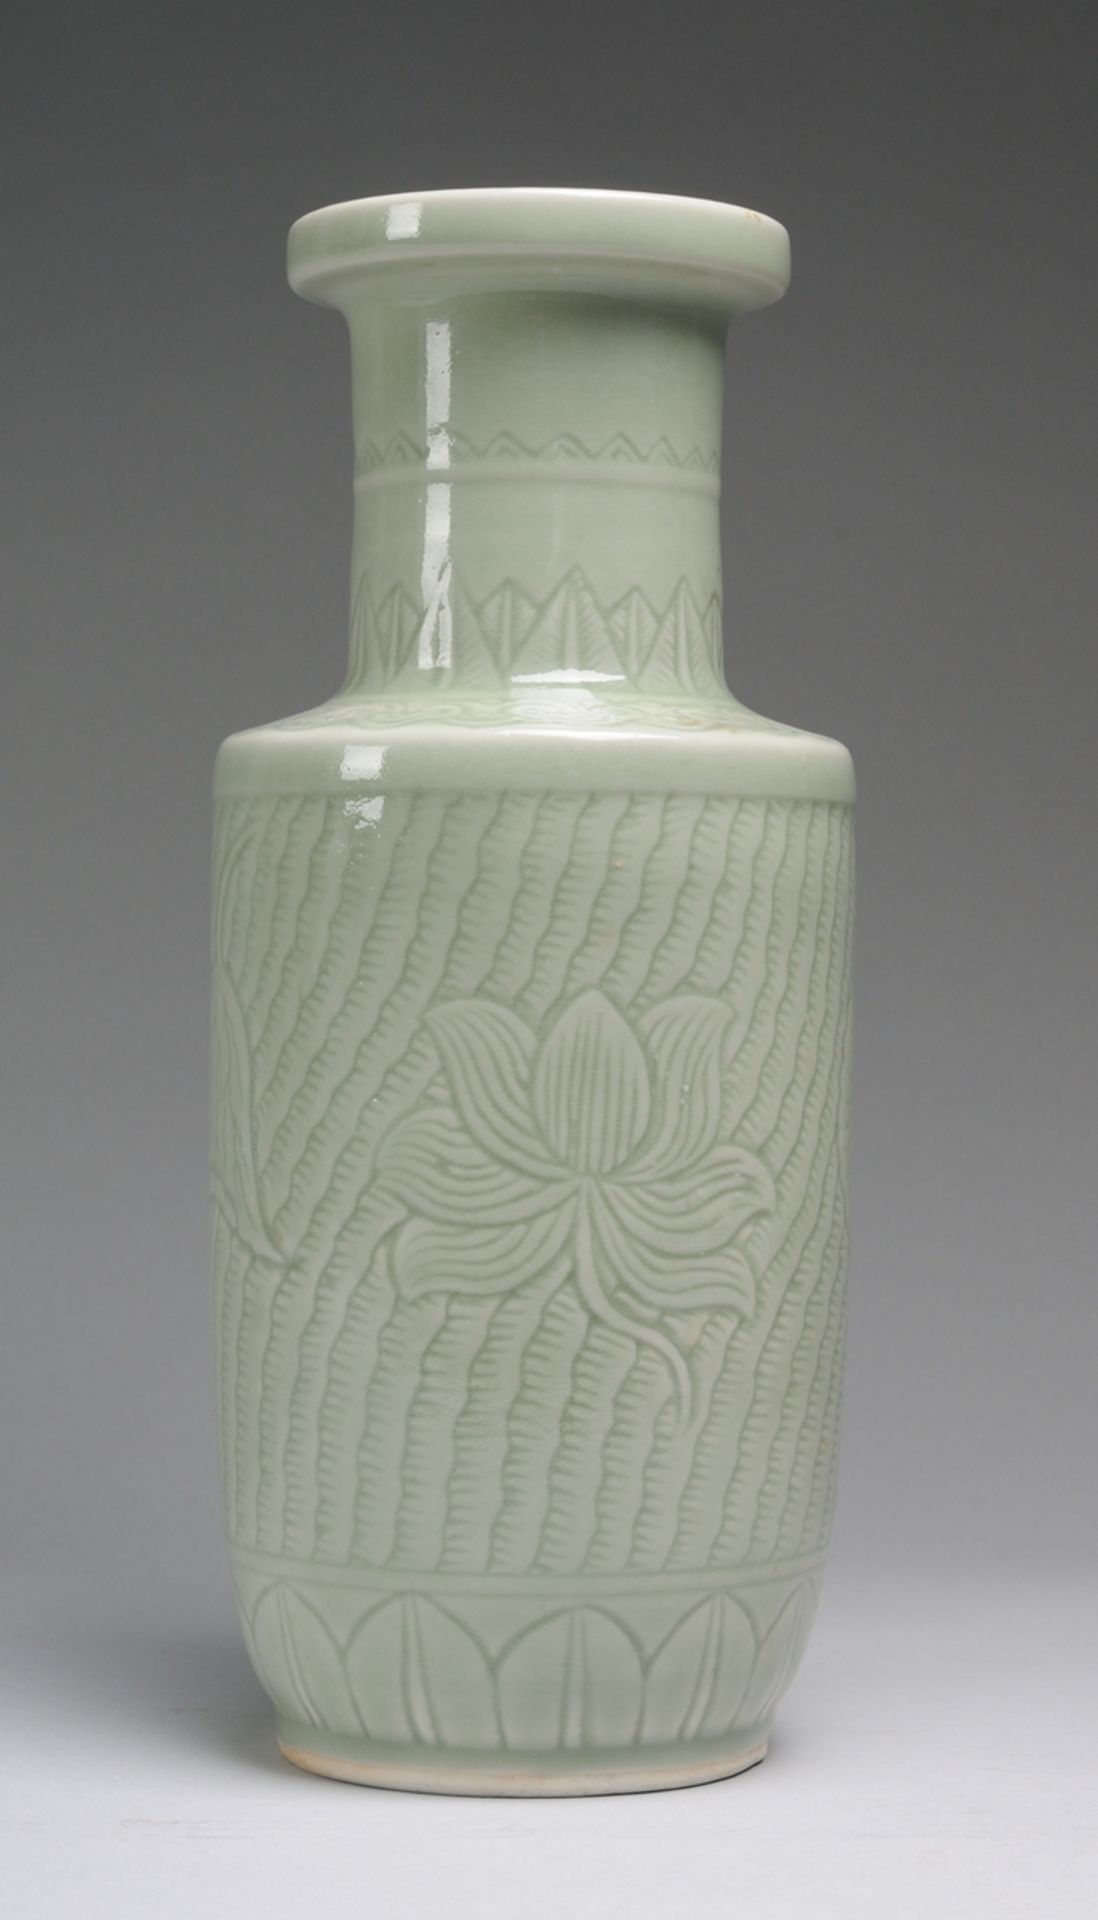 Rouleau-Vase mit reliefiertem Dekor